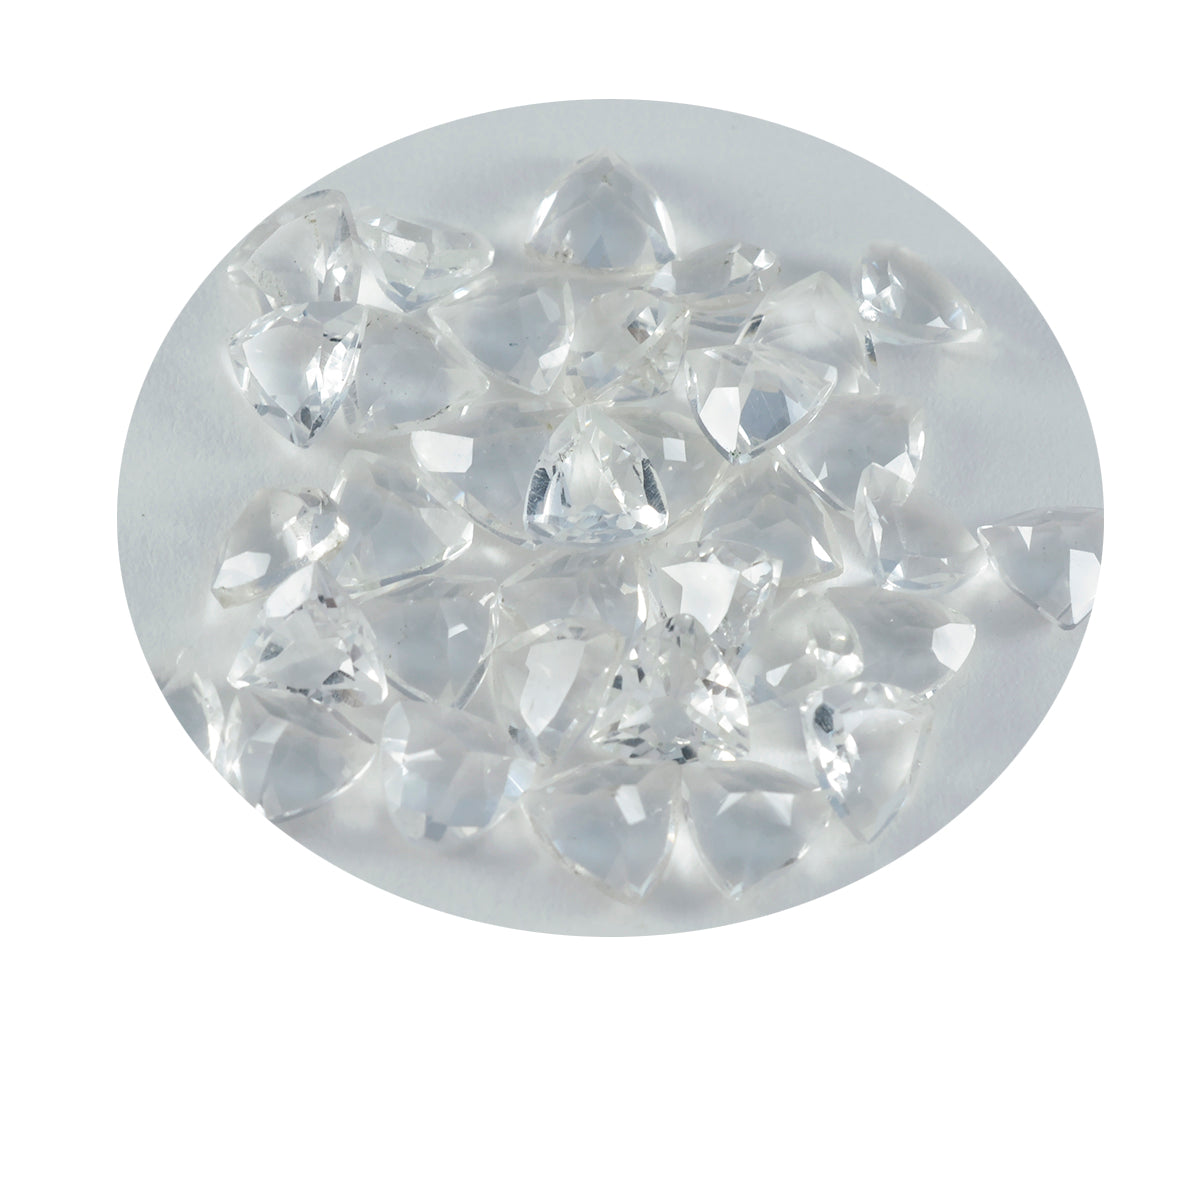 riyogems 1 шт., белый кристалл кварца, ограненный 7x7 мм, форма триллиона, драгоценный камень превосходного качества